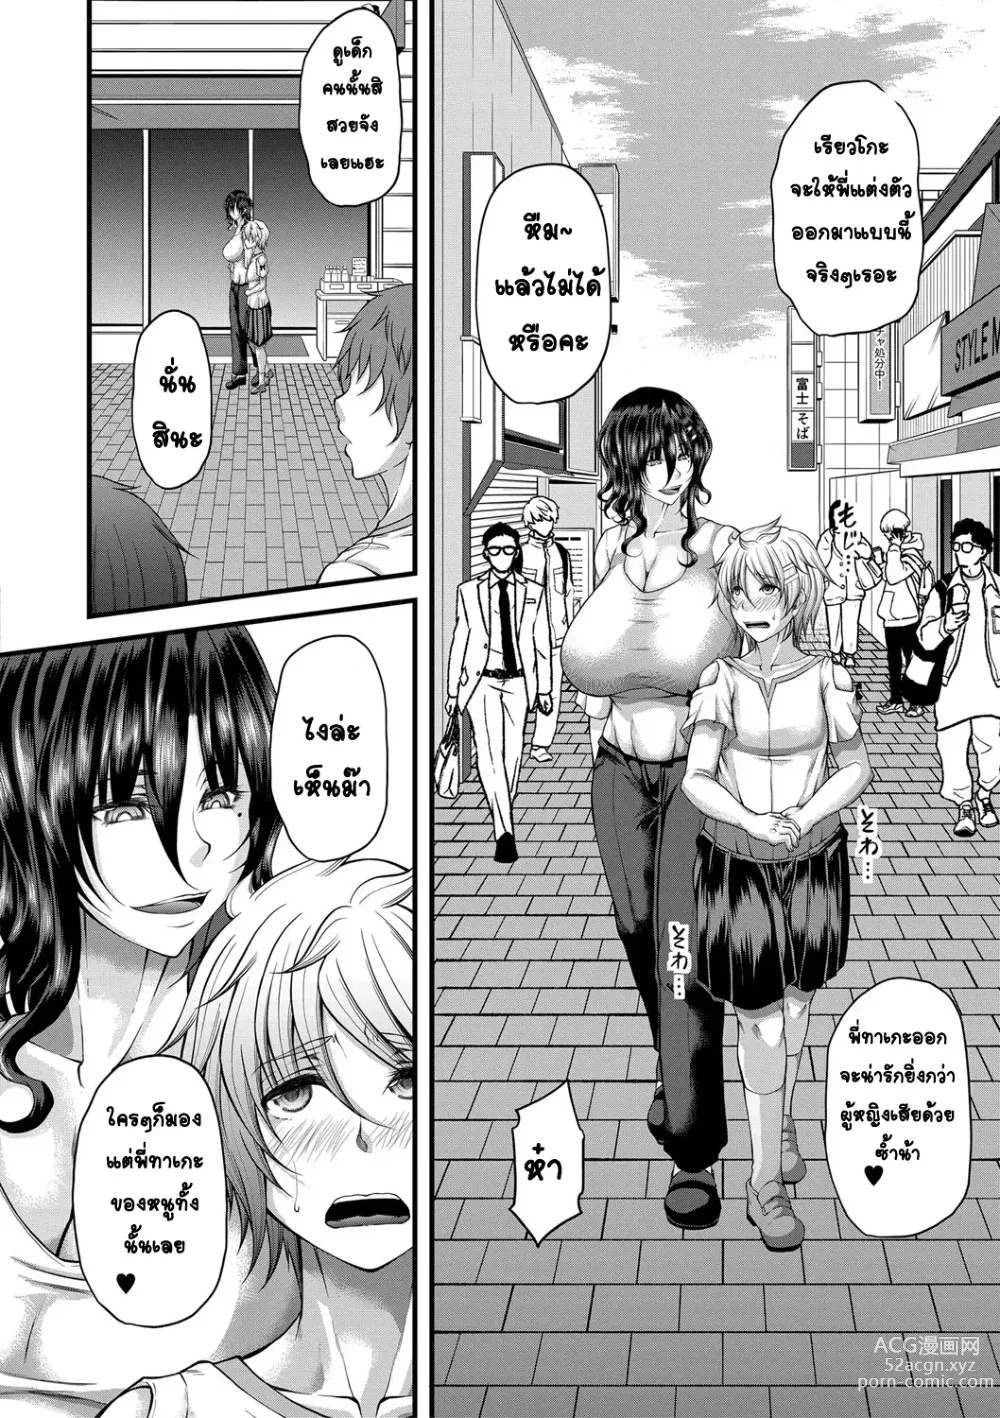 Page 4 of manga kakitsubata Kanae yoru onna ryushi wa han me rarenai 2